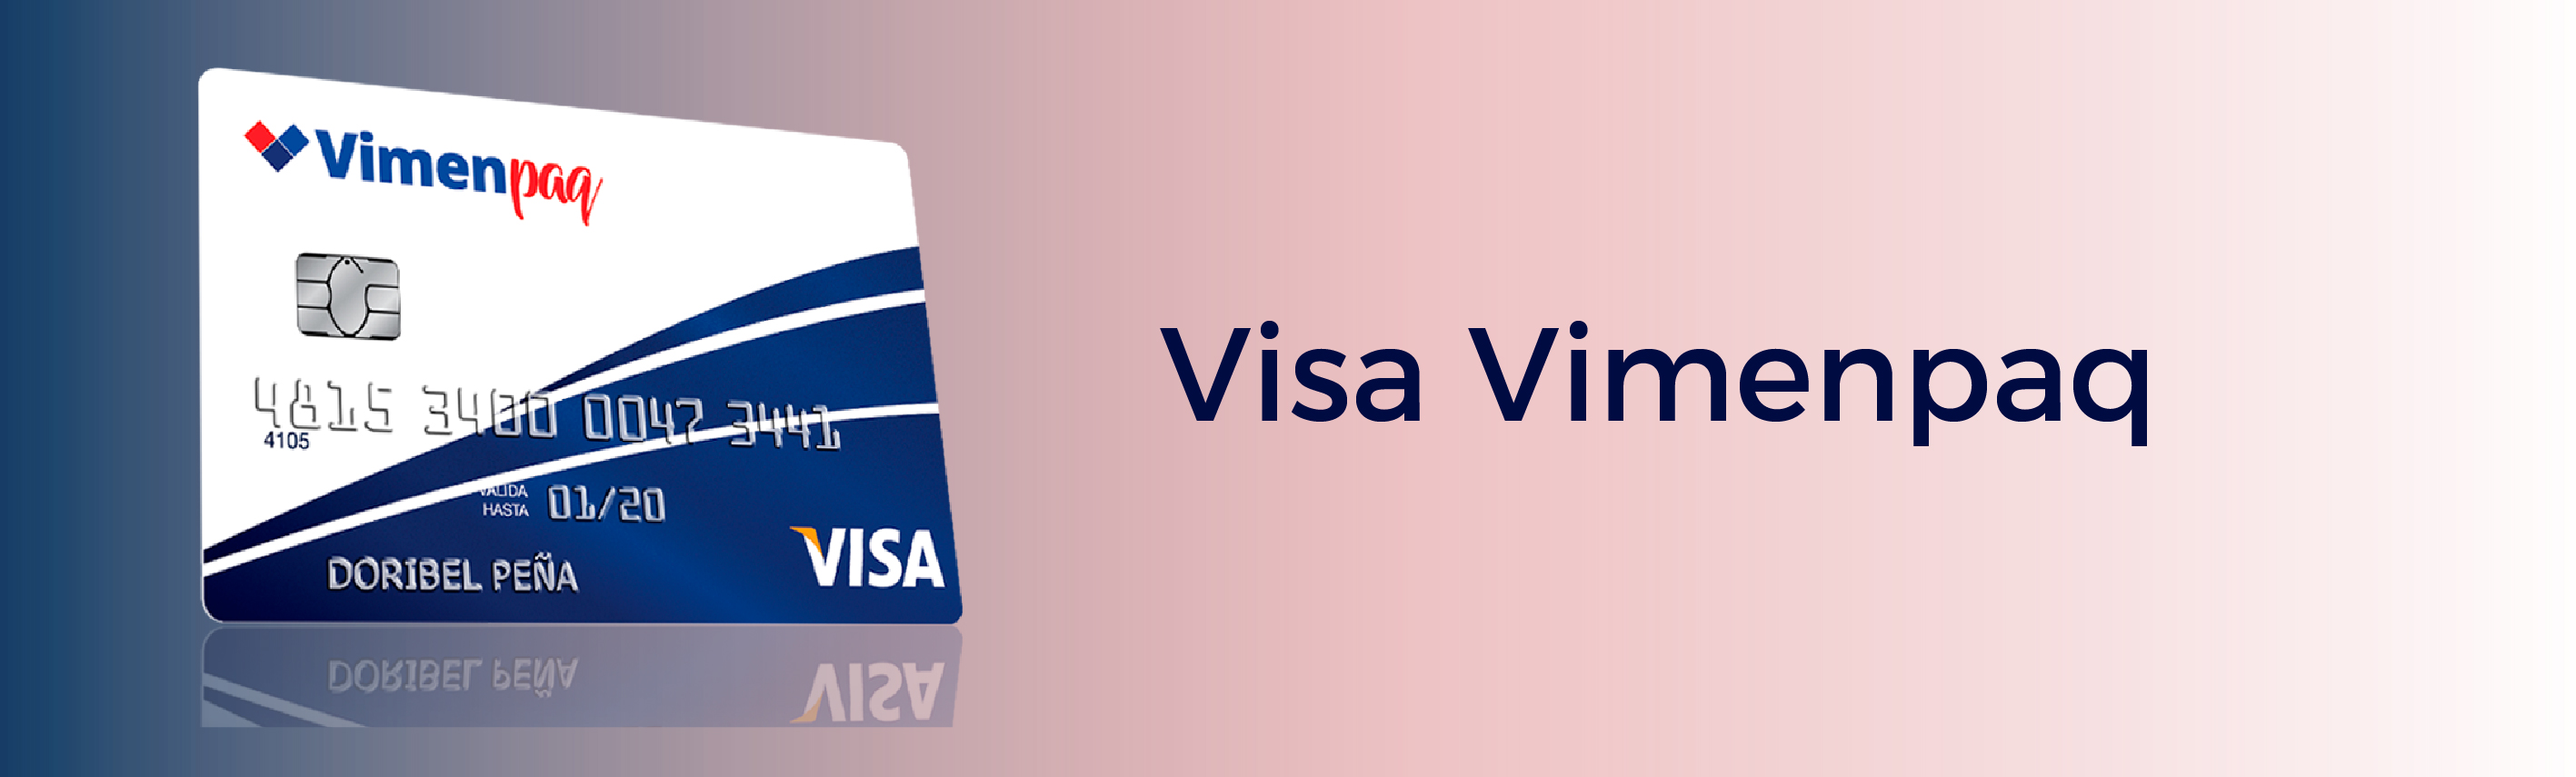 Tarjeta de Crédito Visa Vimenpaq